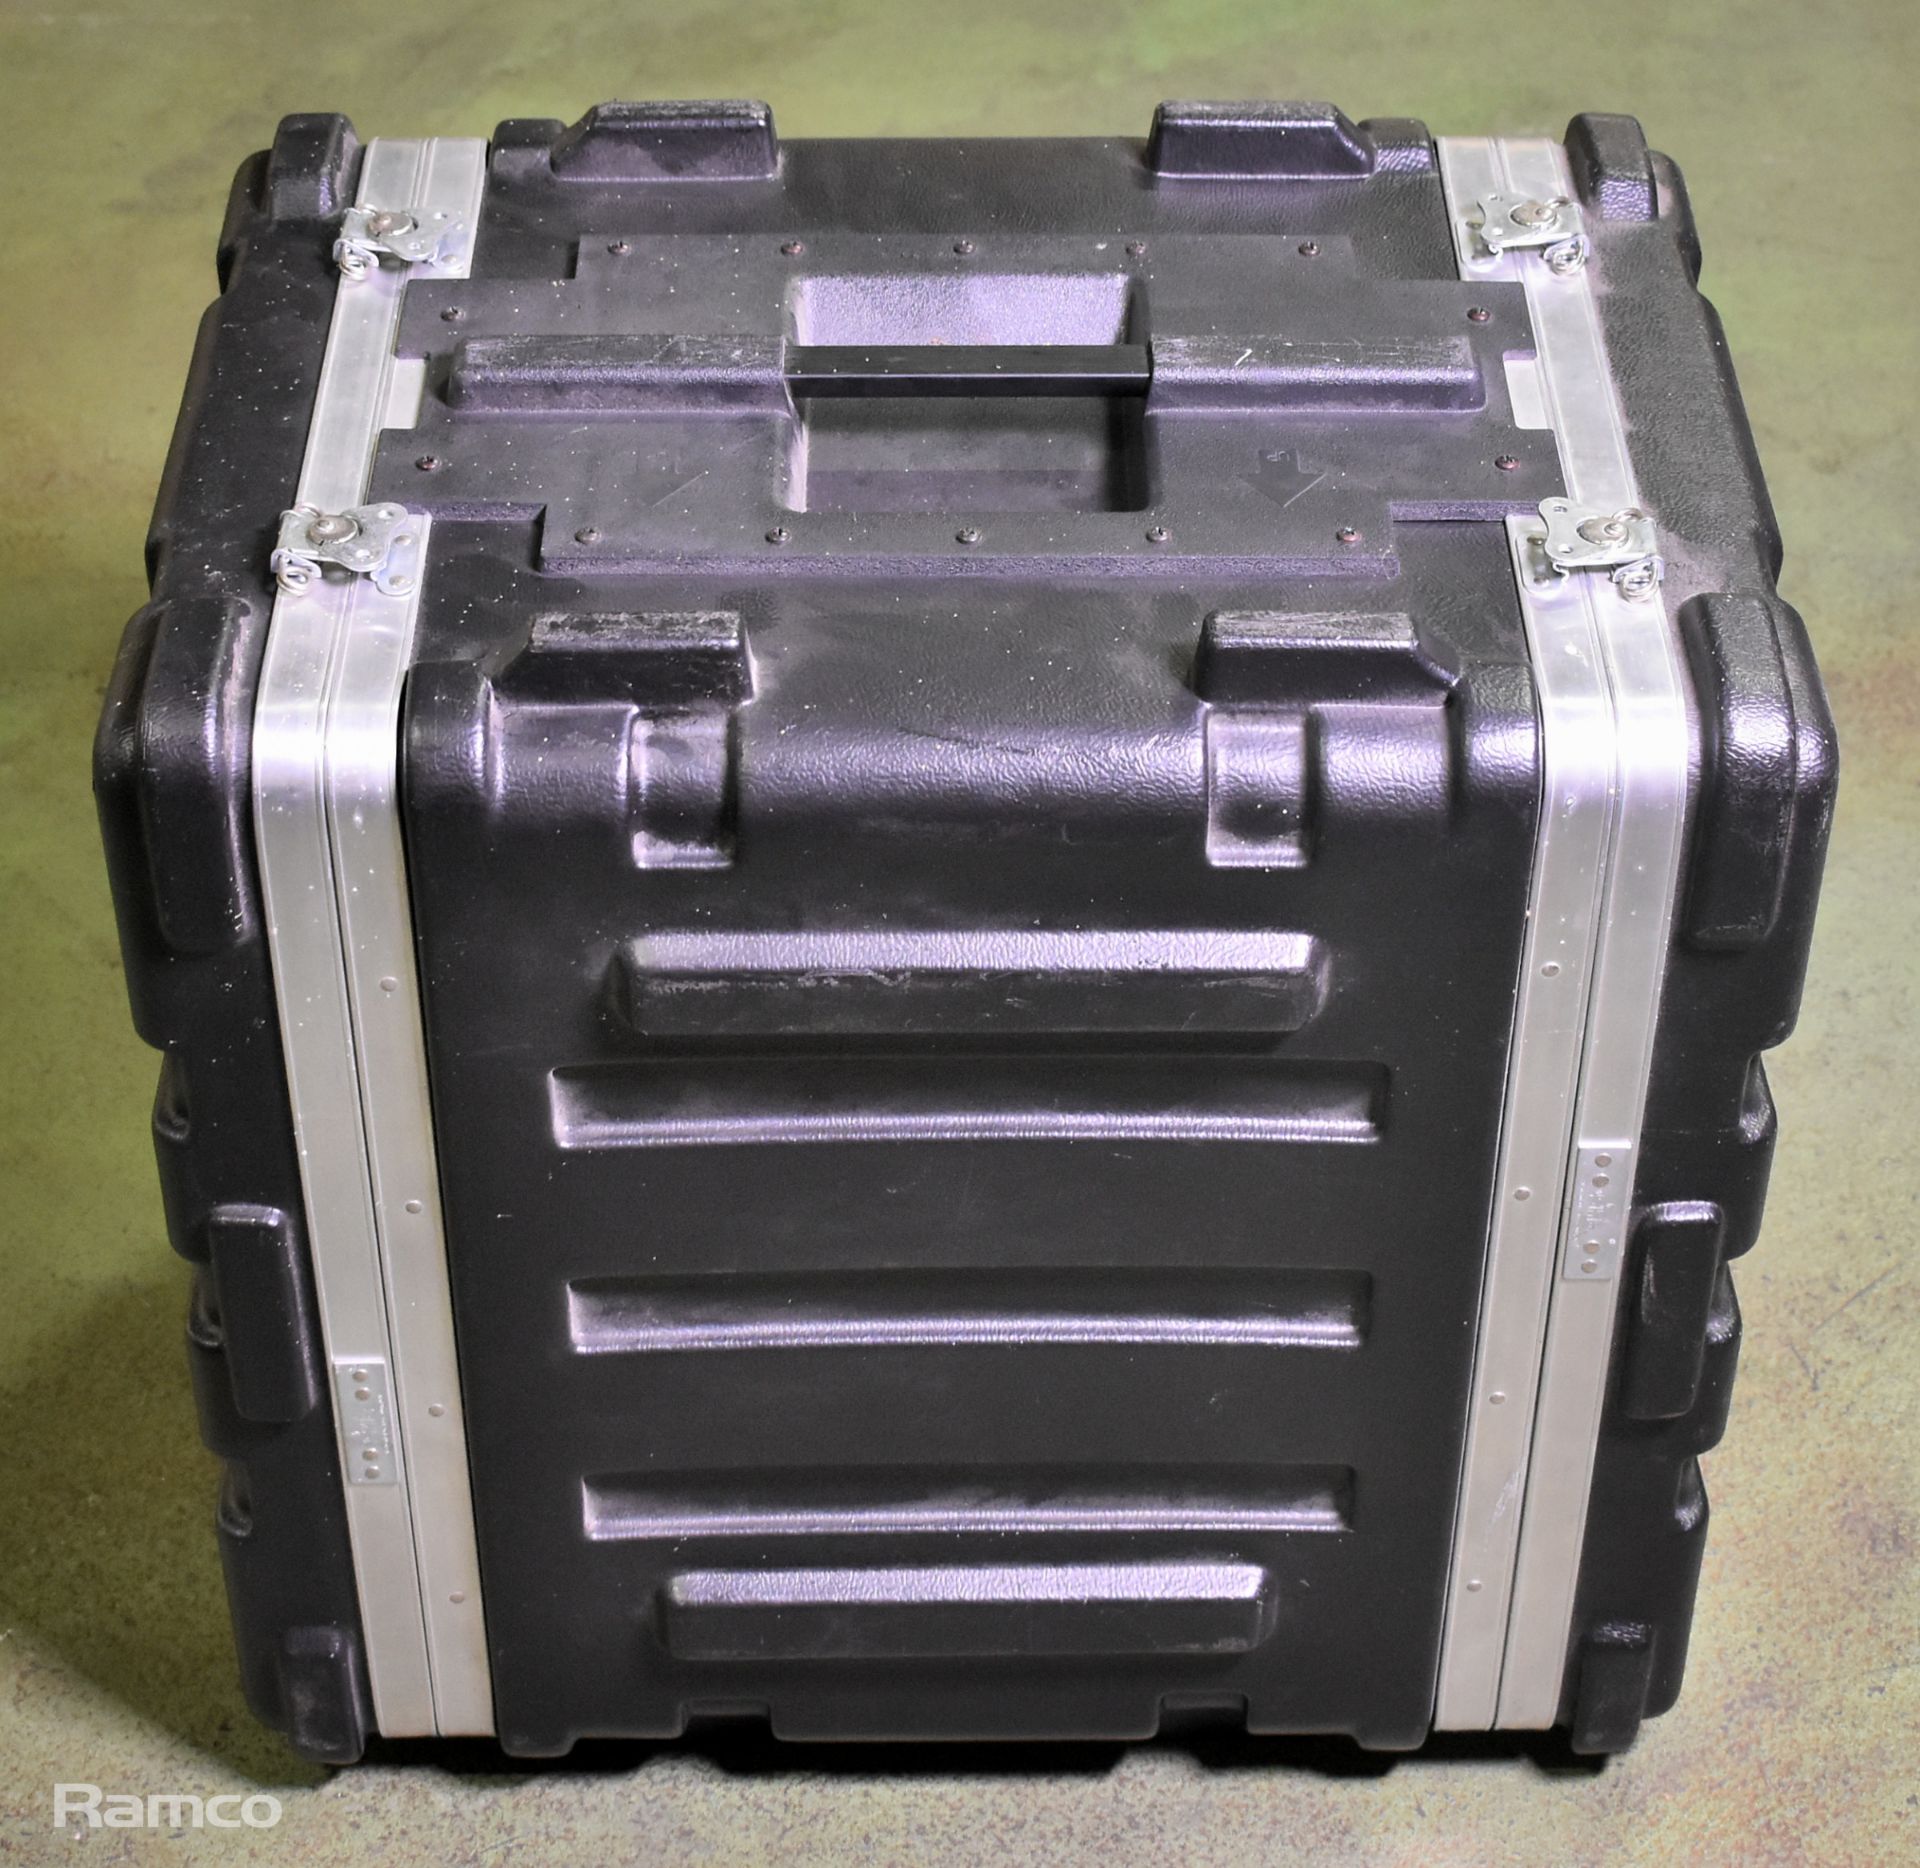 SBK 8U rack case with divider - L 510 x W 410 x H 570mm - Image 5 of 5